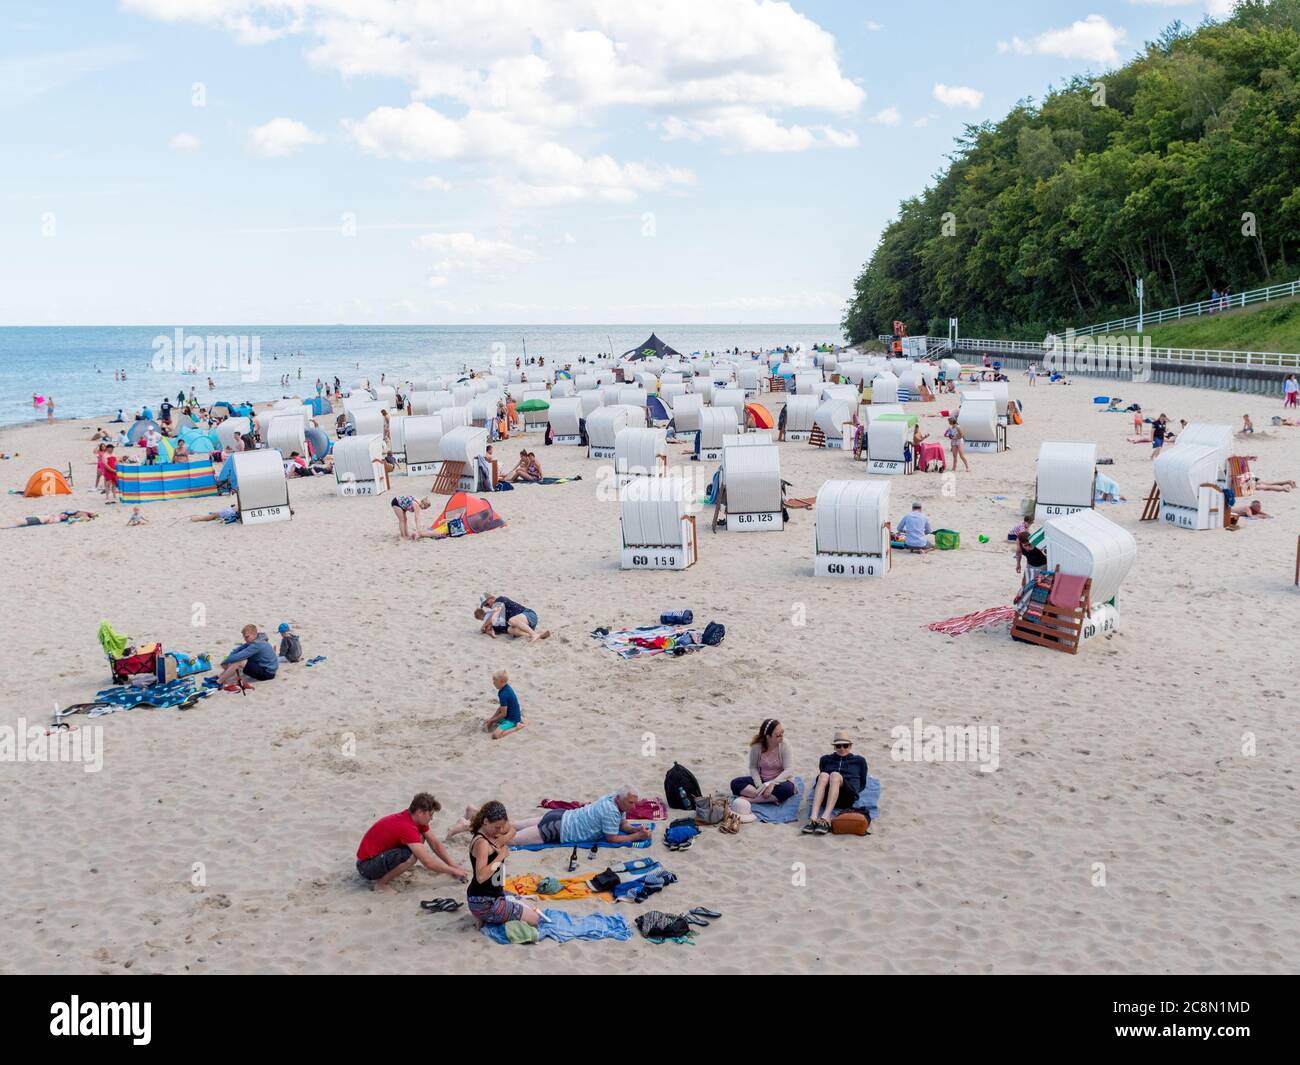 Strand in Sellin auf der Insel Rügen an der Ostsee mit vielen Touristen am Badestrand während des Urlaubs in den Sommerferien, Strandkörbe Badegäste Stock Photo